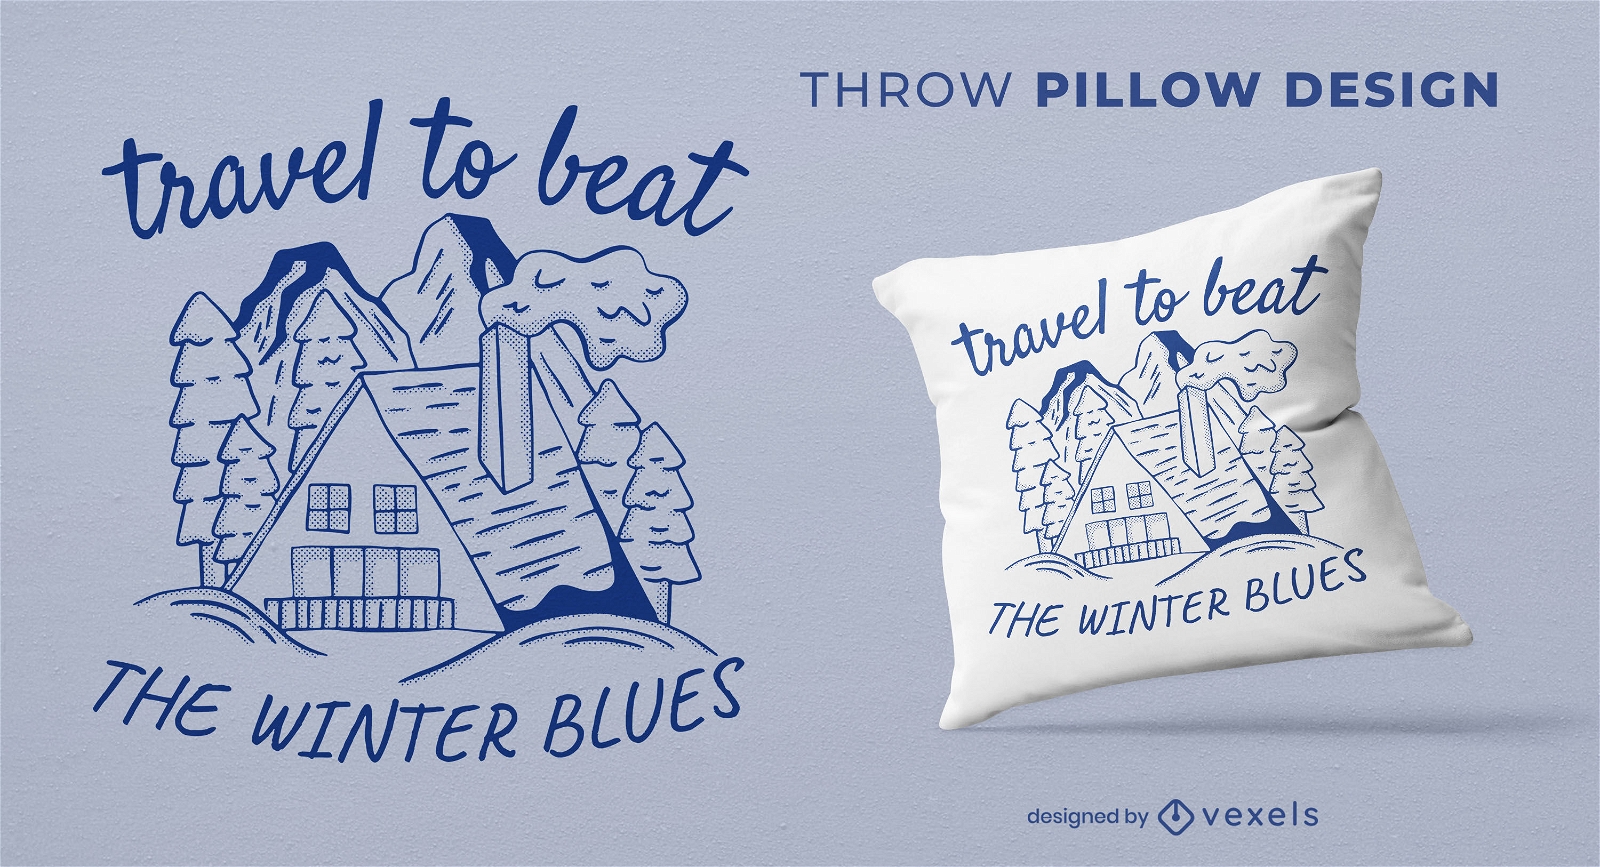 Viaja para vencer el diseño de la almohada de tiro de blues de invierno